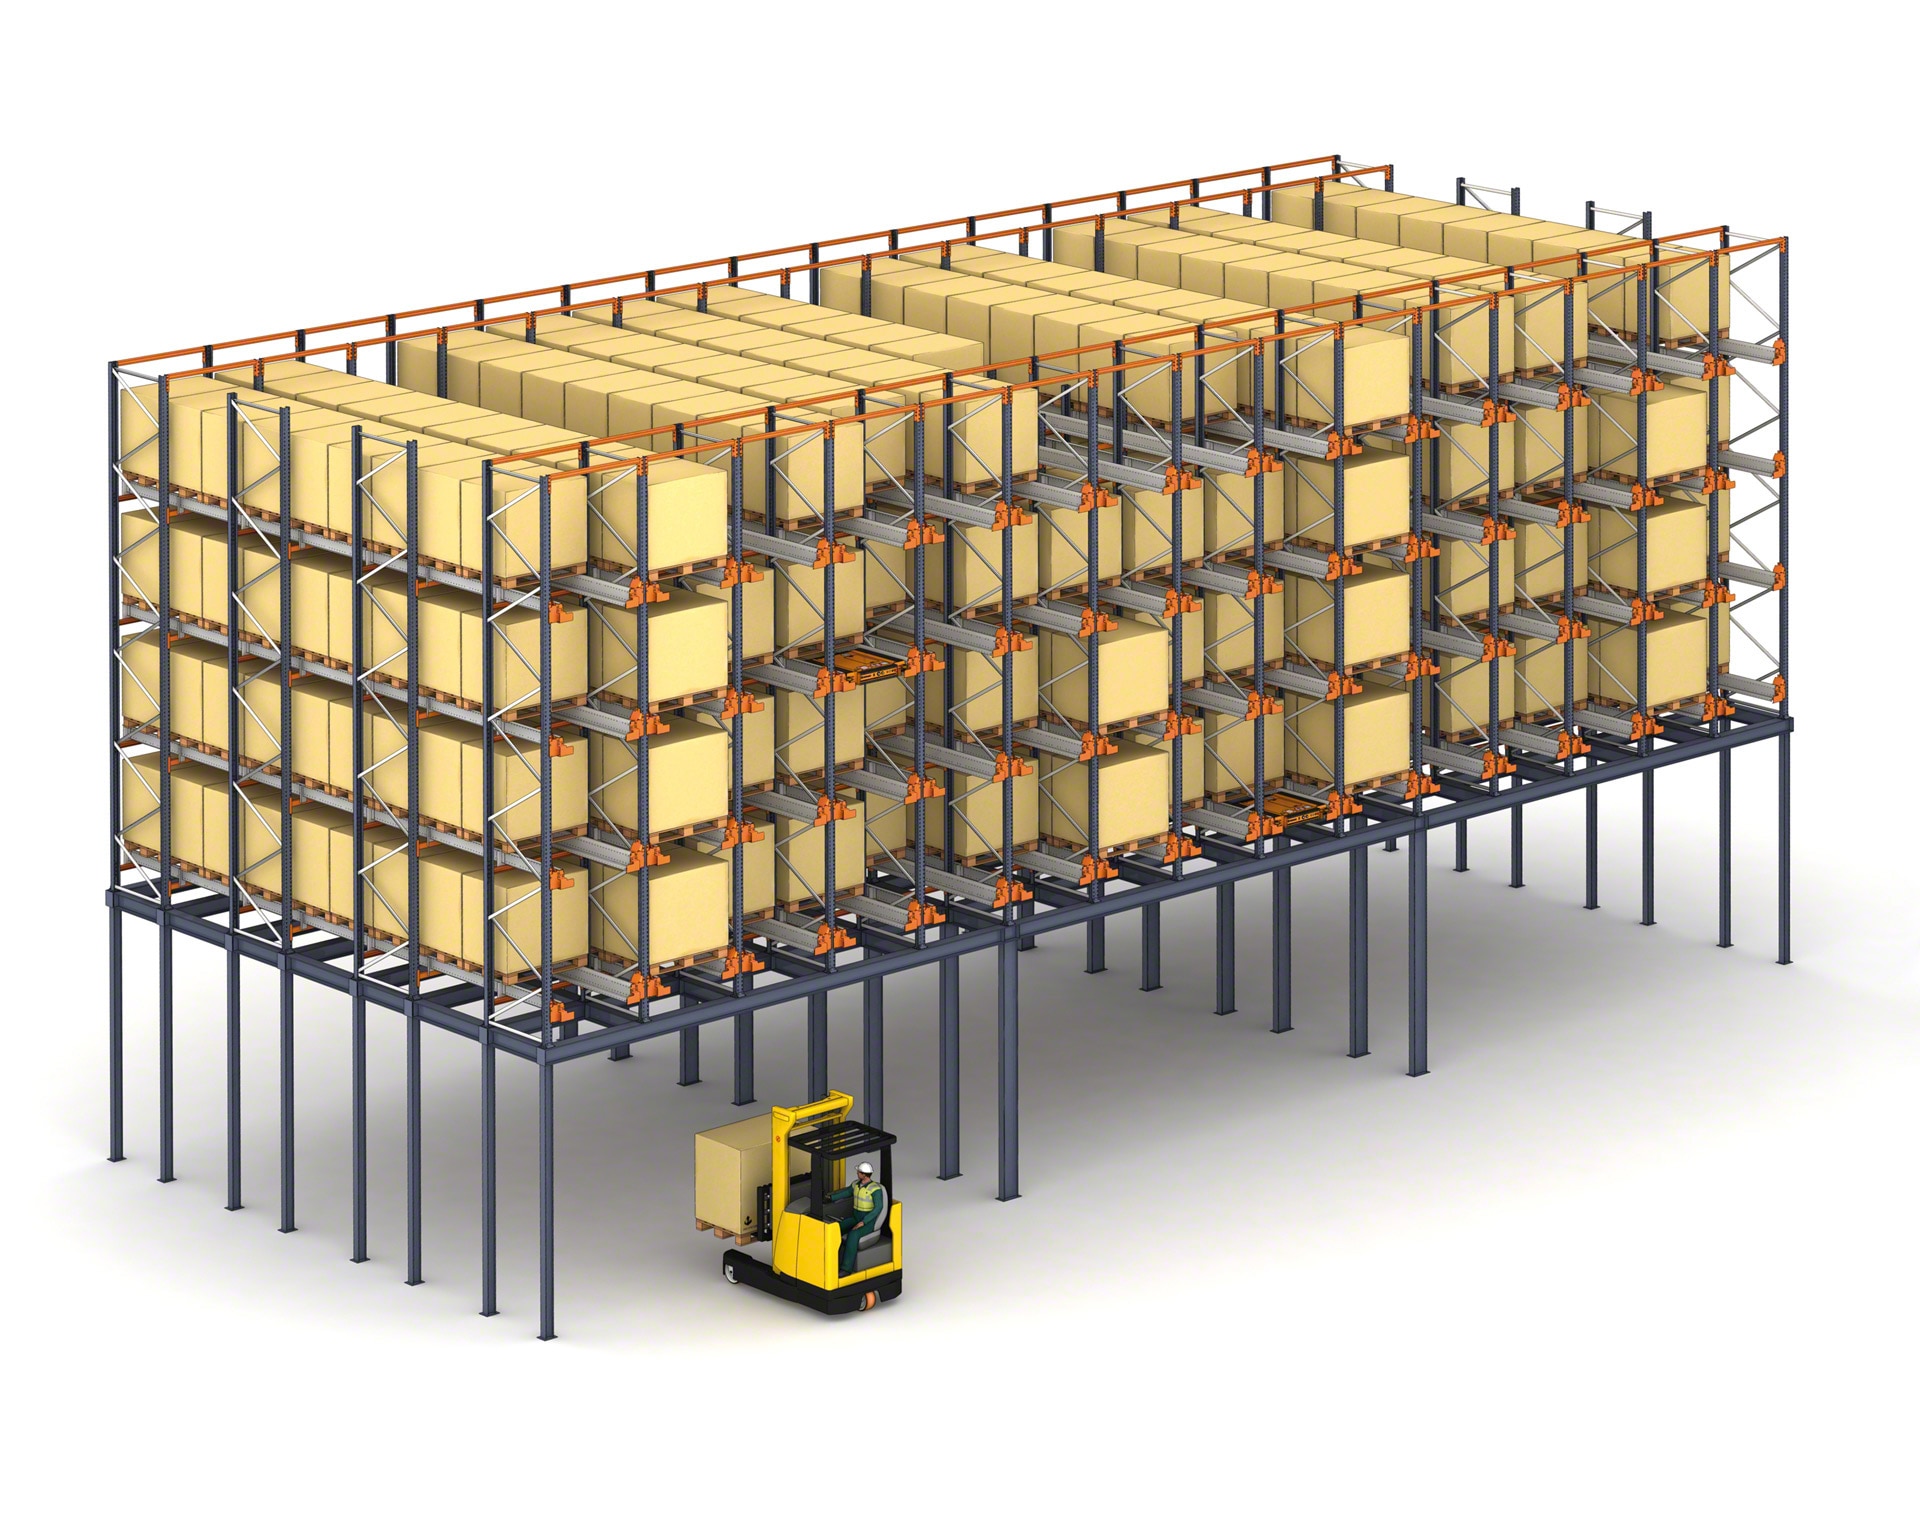 En almacenes de espacio reducido, las estanterías con Pallet Shuttle se pueden colocar en una entreplanta para aprovechar la superficie